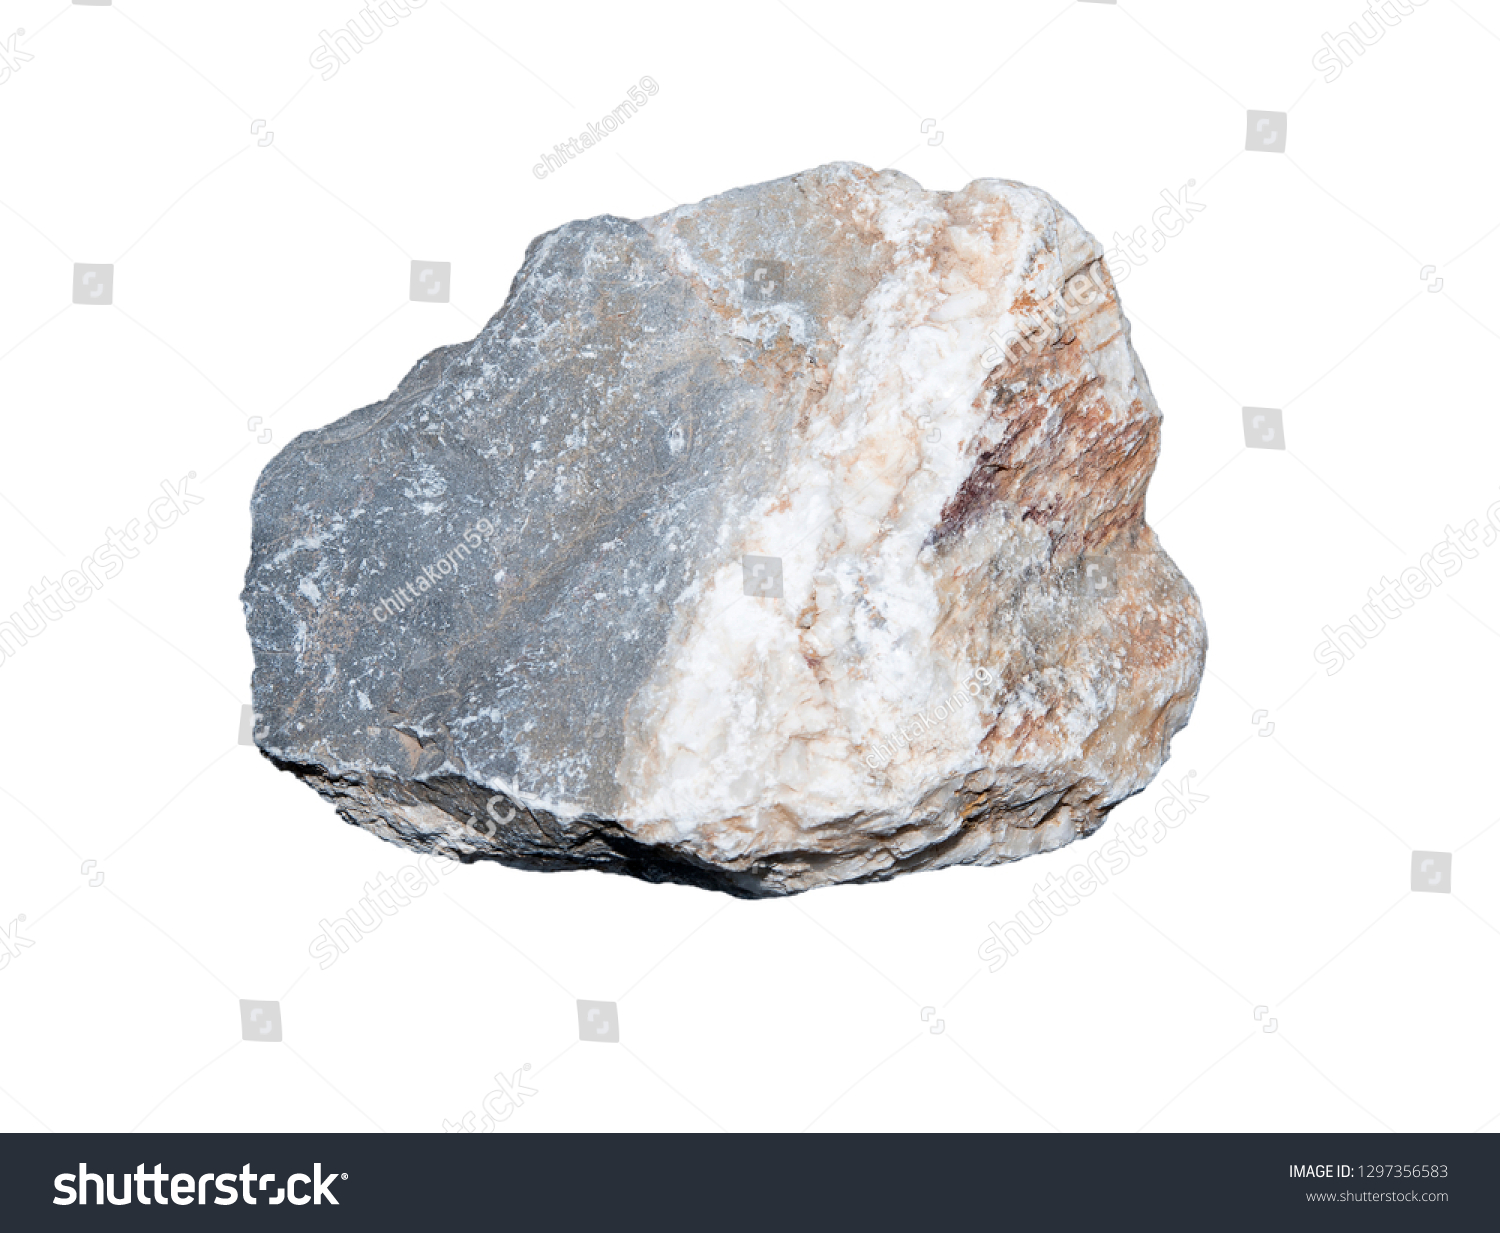 stones isolated on white background.Big granite rock stone,rock stone isolated on white background. #1297356583